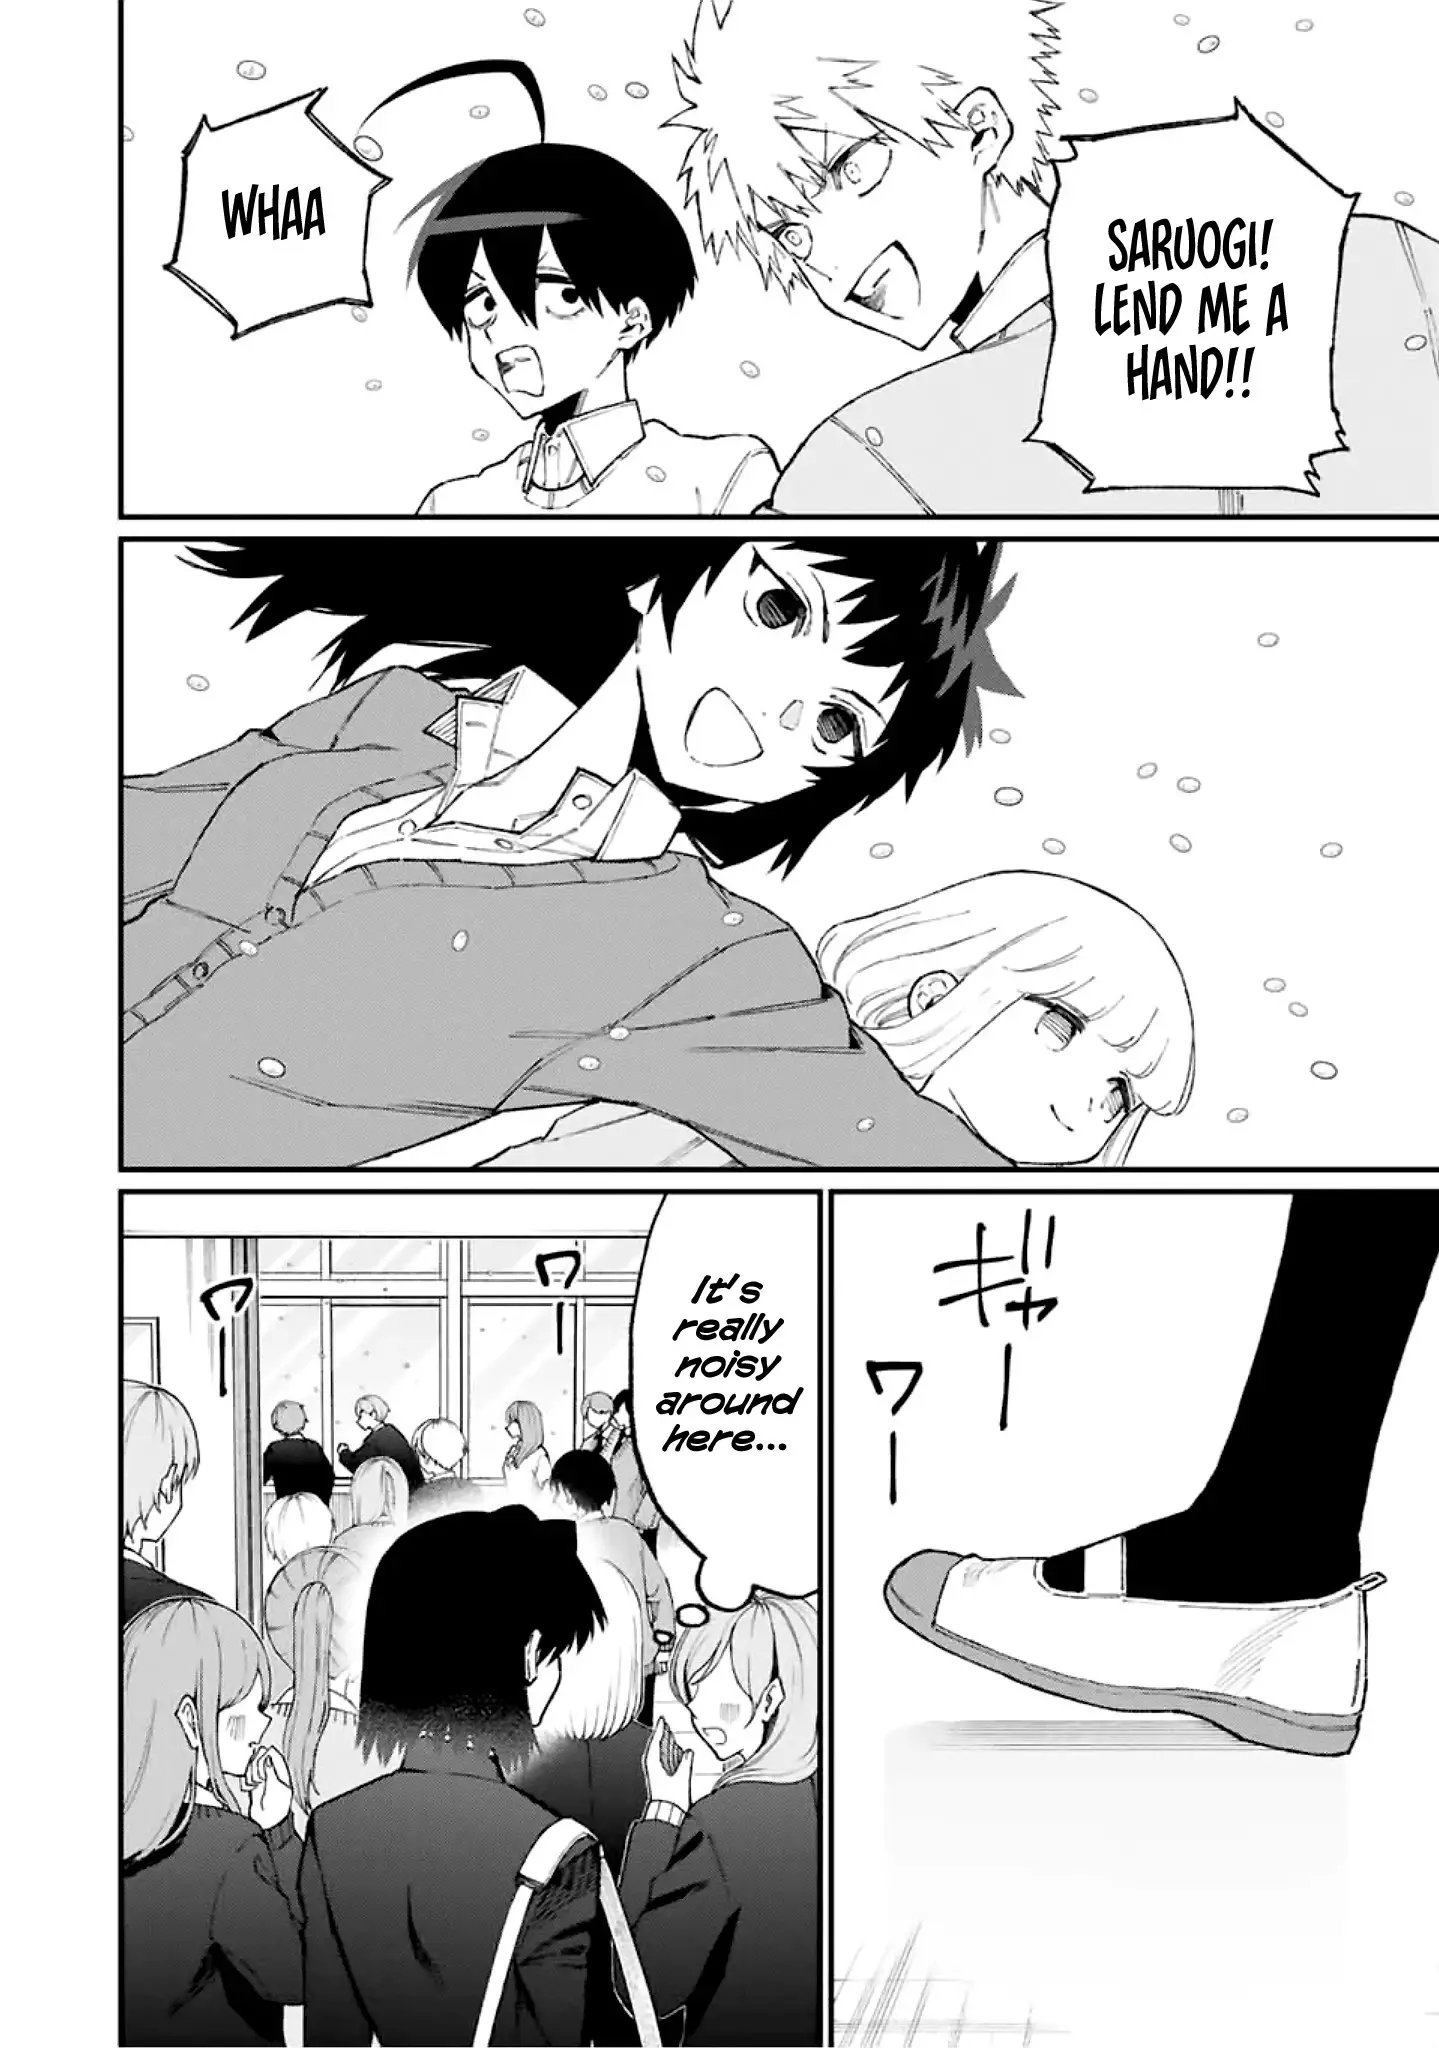 Shikimori's Not Just A Cutie - 103 page 9